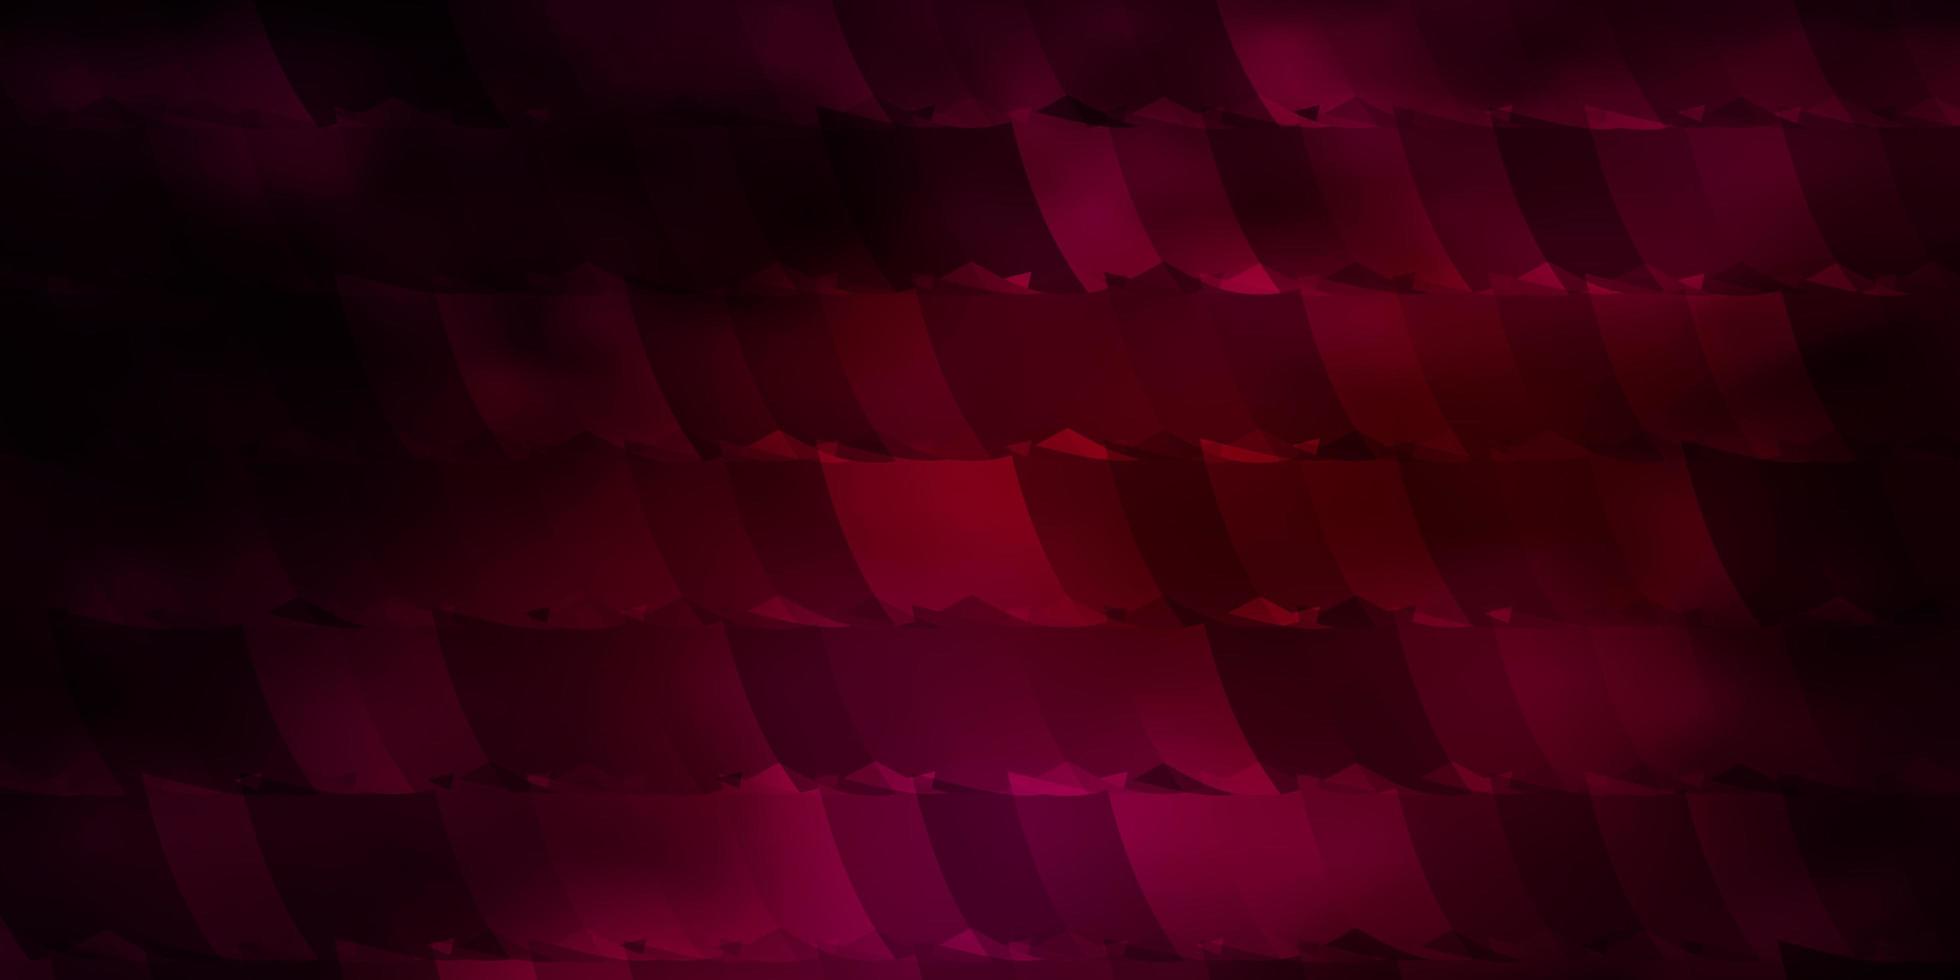 padrão de vetor rosa escuro com hexágonos coloridos.